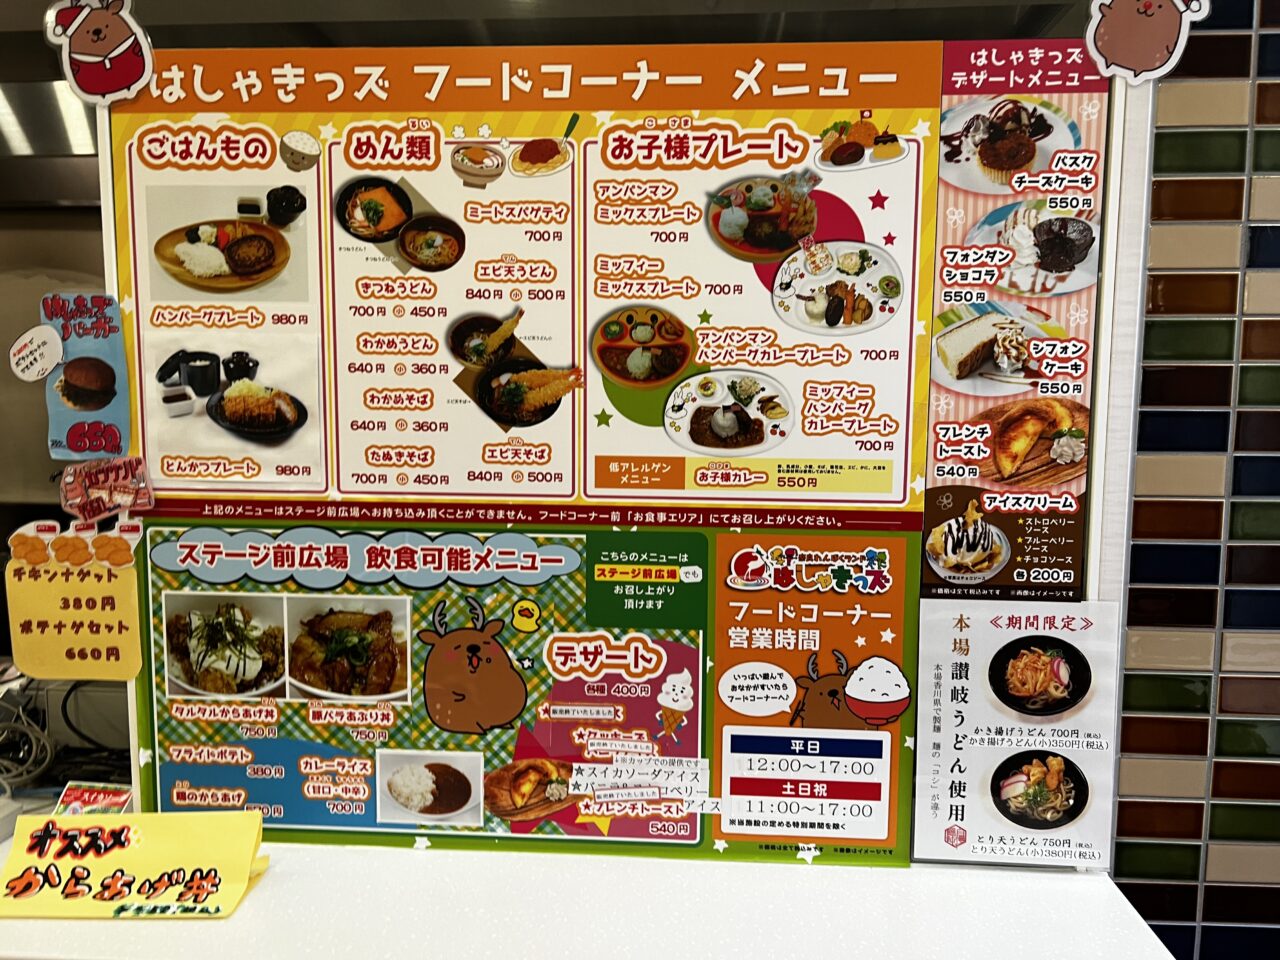 奈良健康ランドに併設されているはしゃきっズのフードコーナーメニューです。